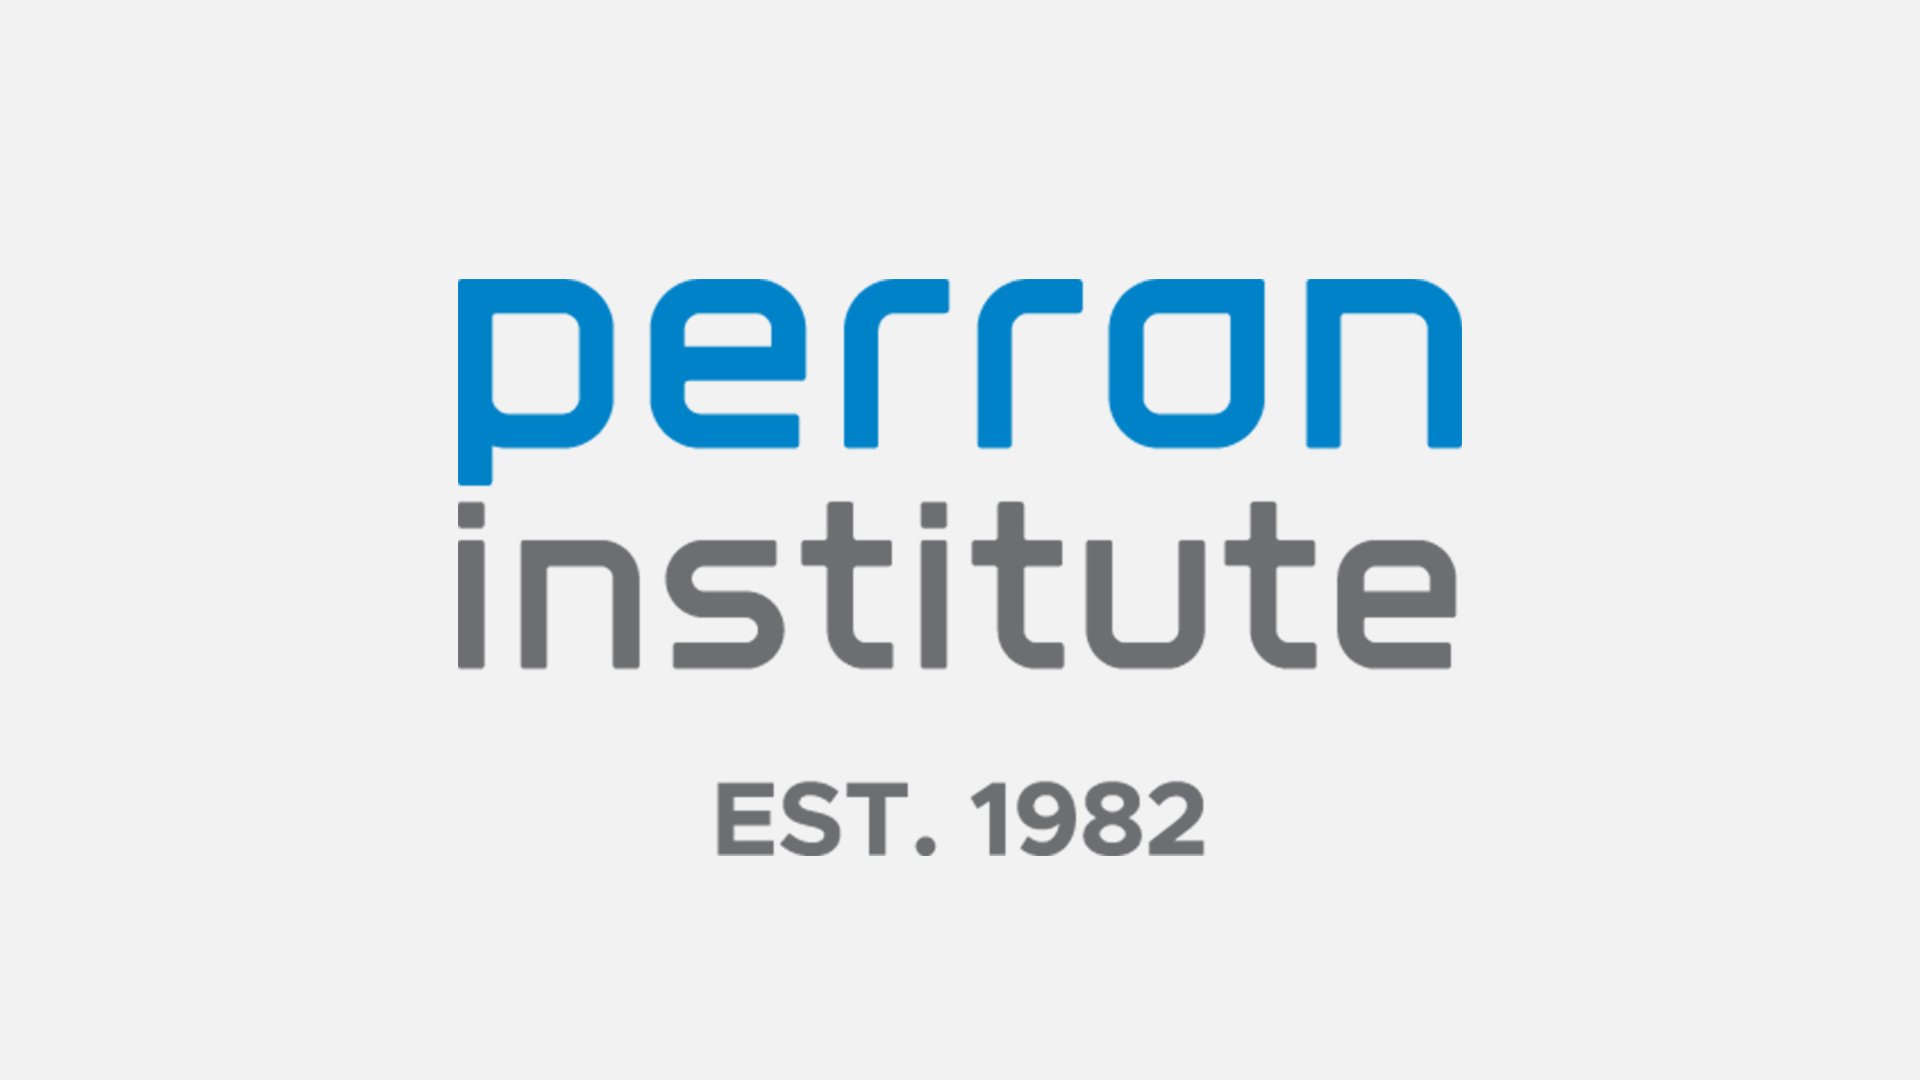 Perron Institute.jpg